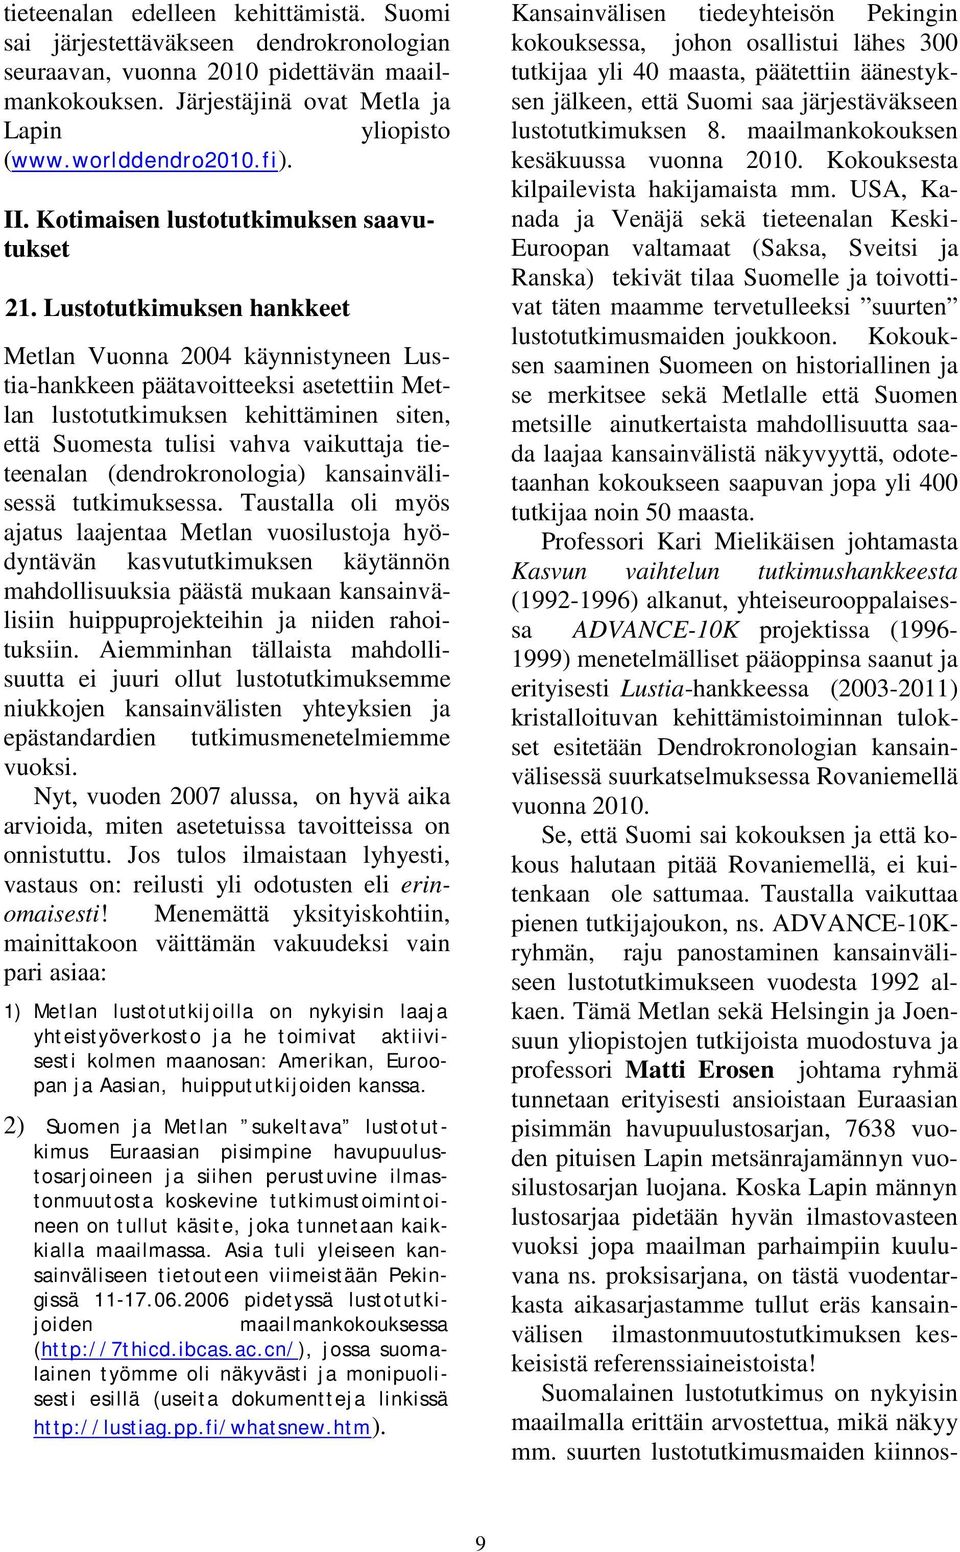 Lustotutkimuksen hankkeet Metlan Vuonna 2004 käynnistyneen Lustia-hankkeen päätavoitteeksi asetettiin Metlan lustotutkimuksen kehittäminen siten, että Suomesta tulisi vahva vaikuttaja tieteenalan